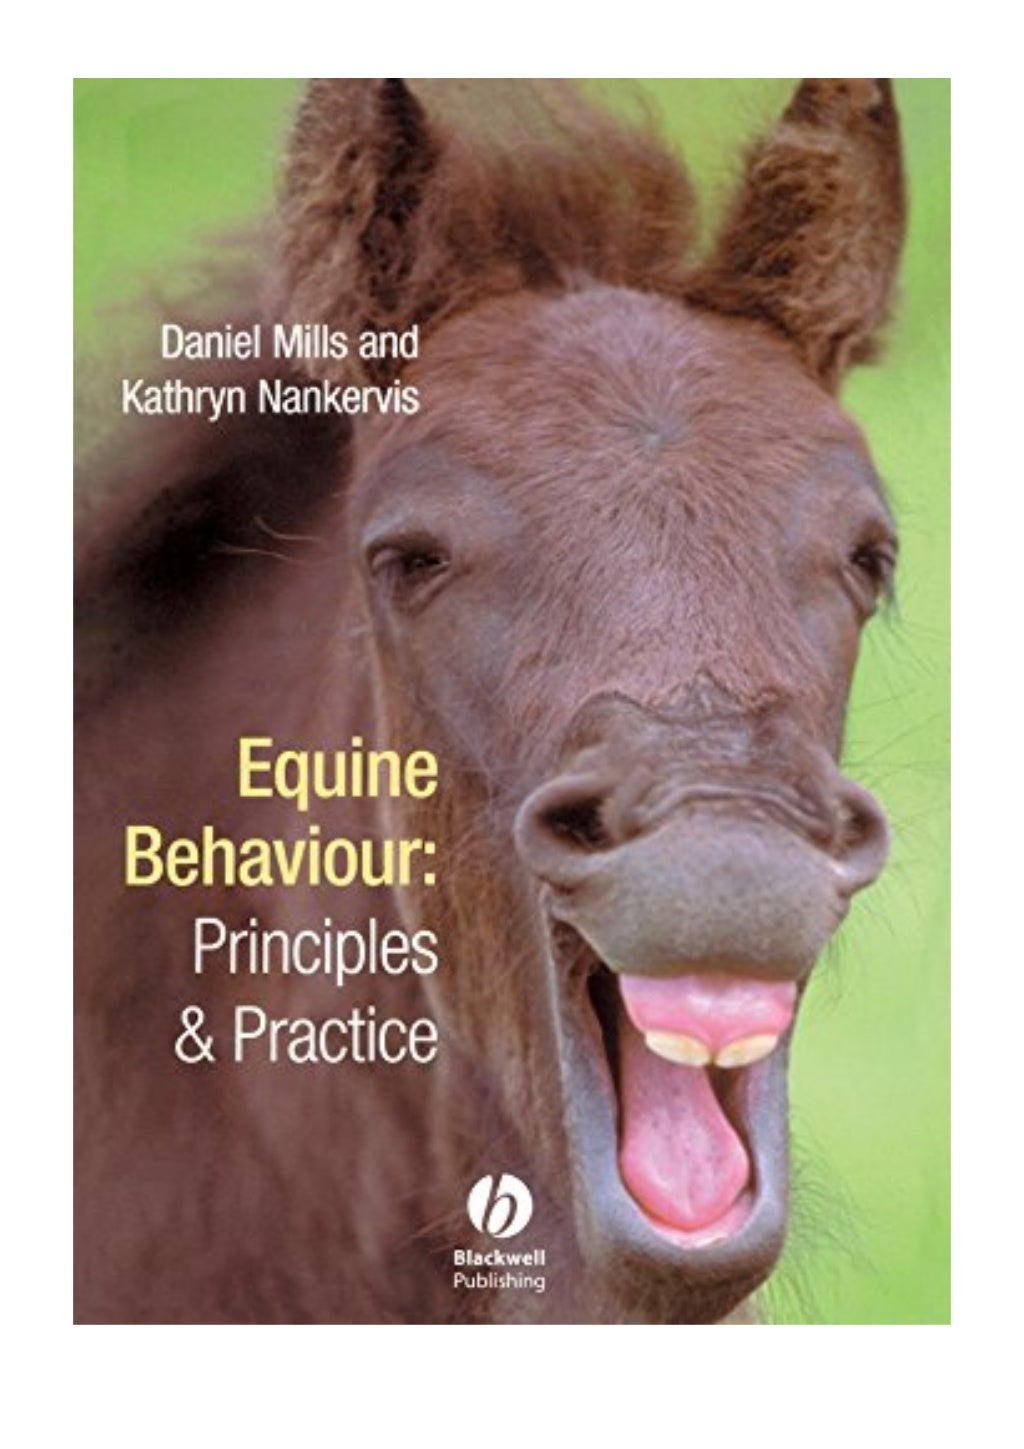 equine behaviour dissertation ideas